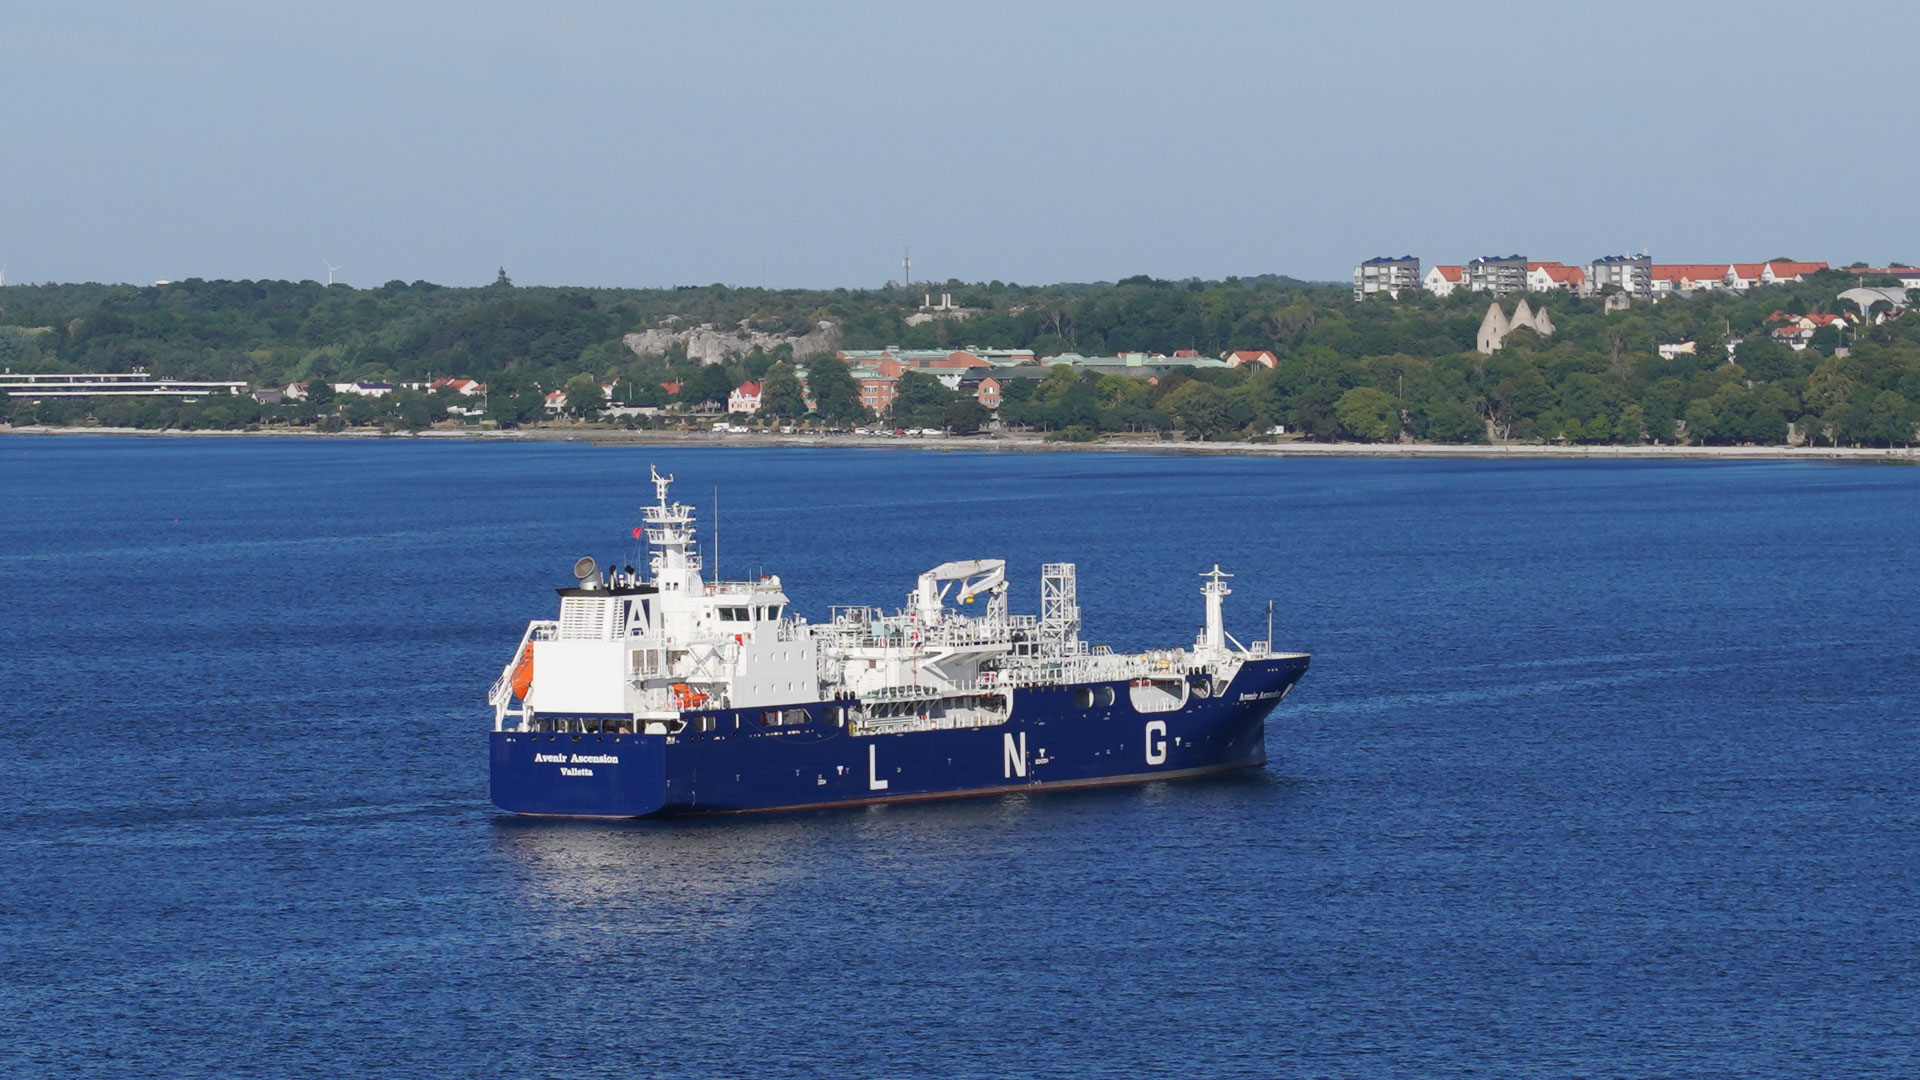 Das LNG Tankschiff Avenir Ascension ist vor dem Hafen von Visby zu sehen. | picture alliance / Jörg Carsten